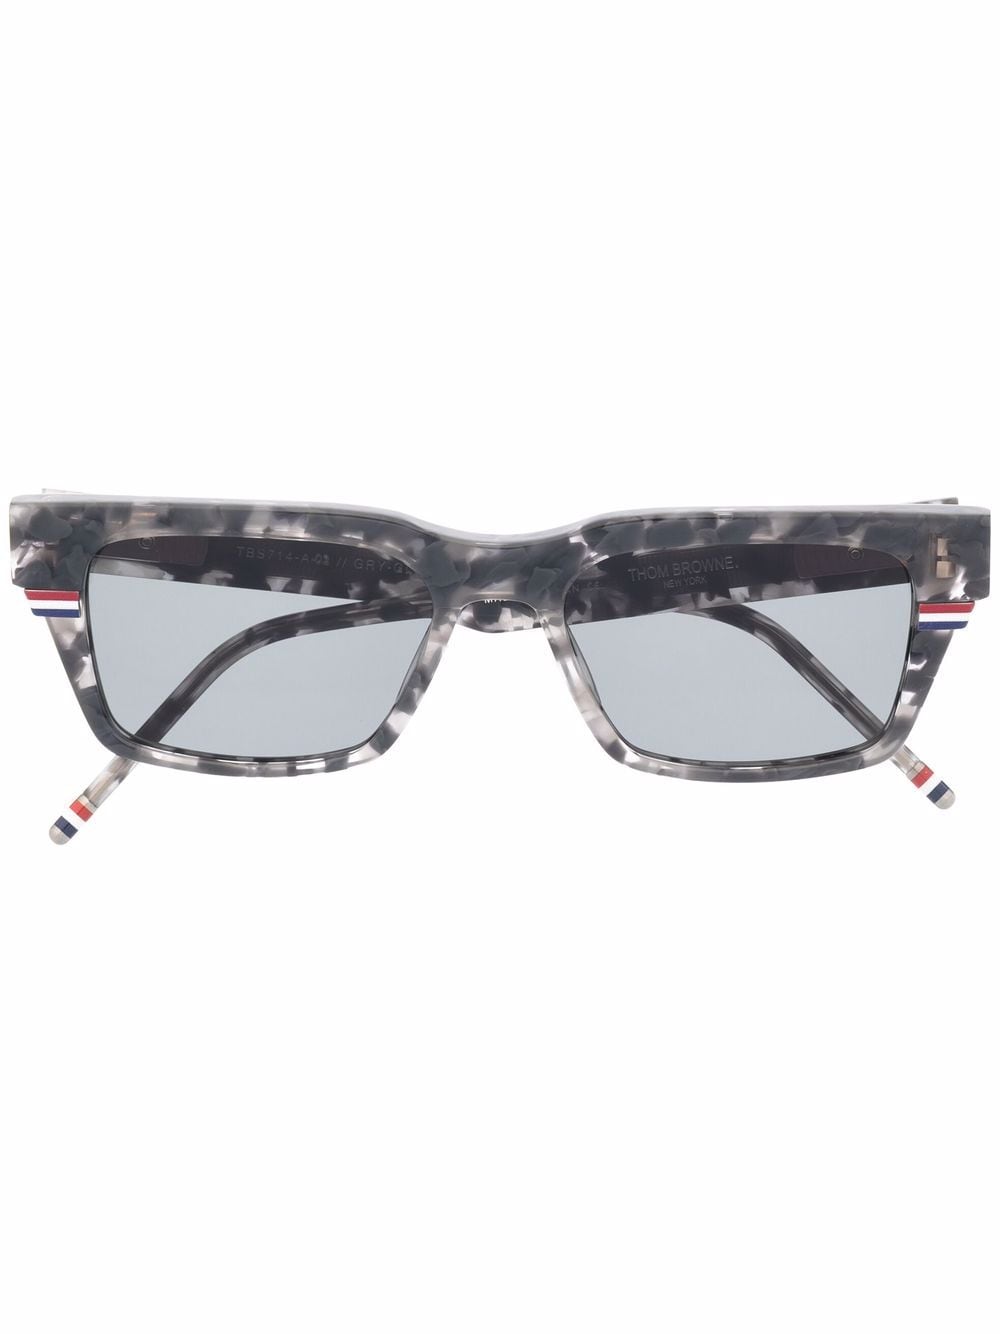 Thom Browne Eyewear TB714 tortoiseshell-effect sunglasses - Grey von Thom Browne Eyewear